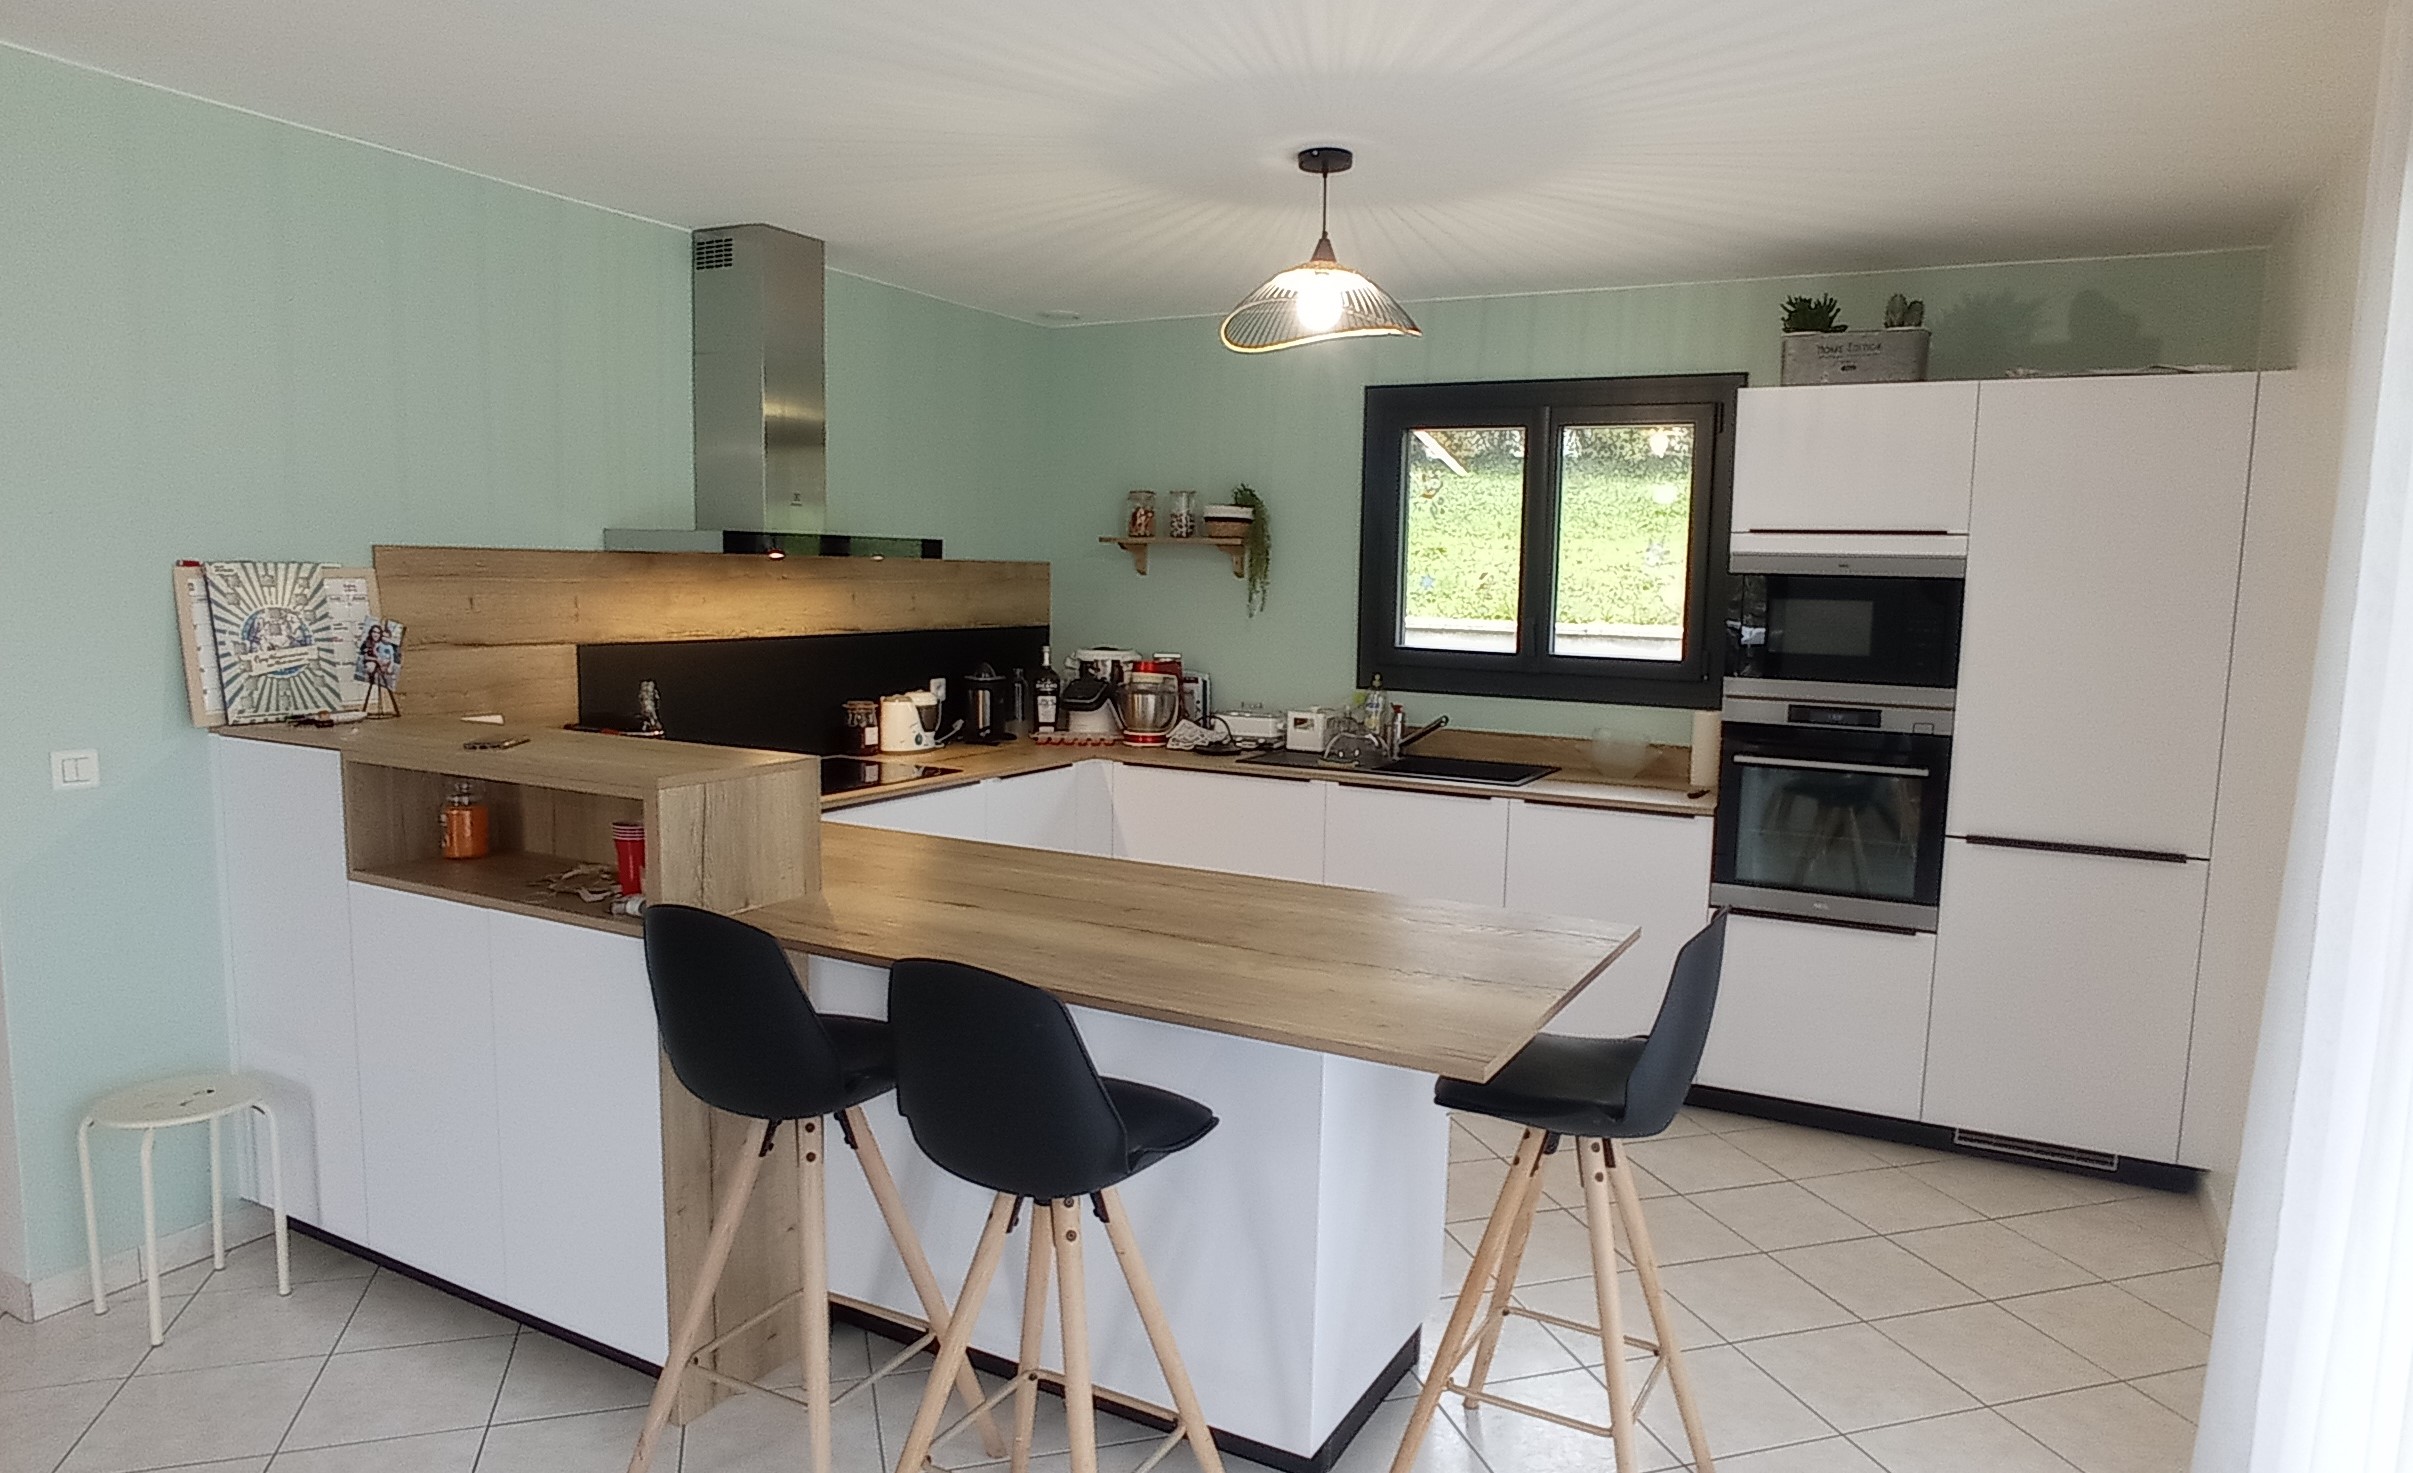 Lire la suite à propos de l’article Rénovation d’une cuisine à Alby-sur-Chéran en Haute-Savoie